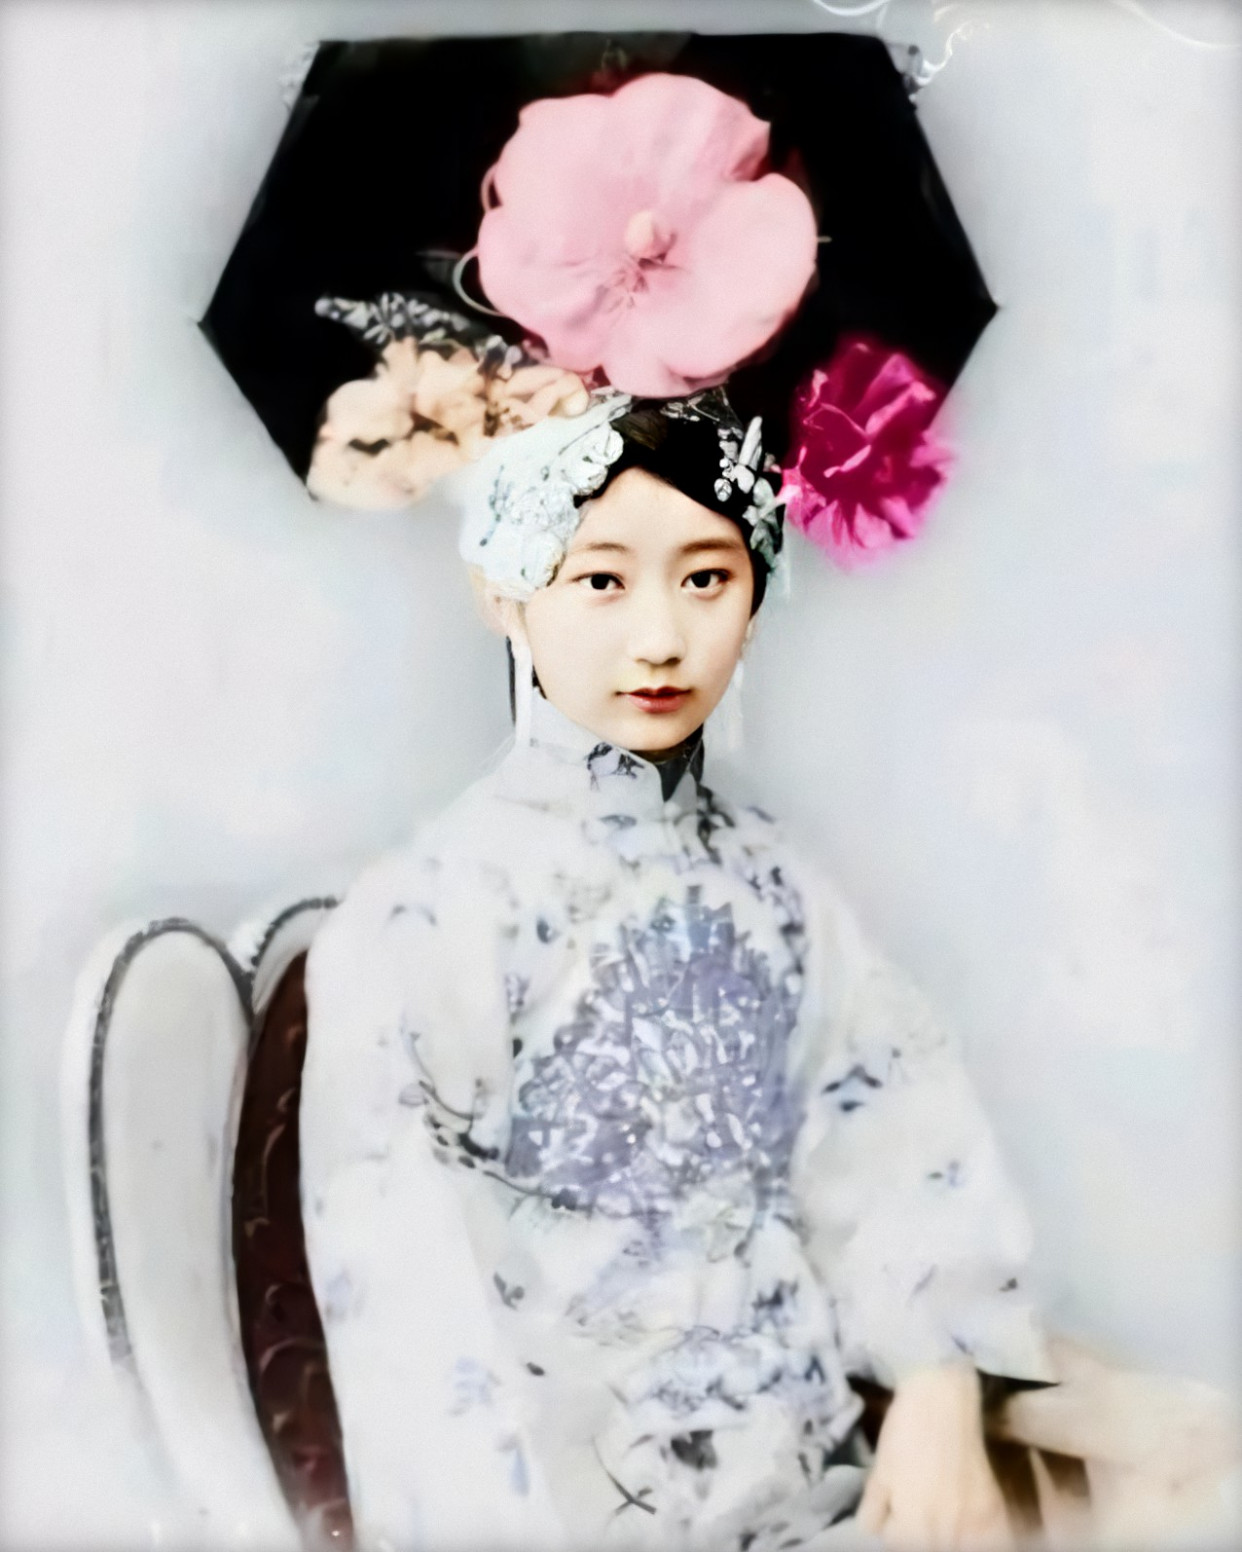 格格是清朝贵族称谓,满语意为小姐,是满族和清朝对女性的一种称谓,为